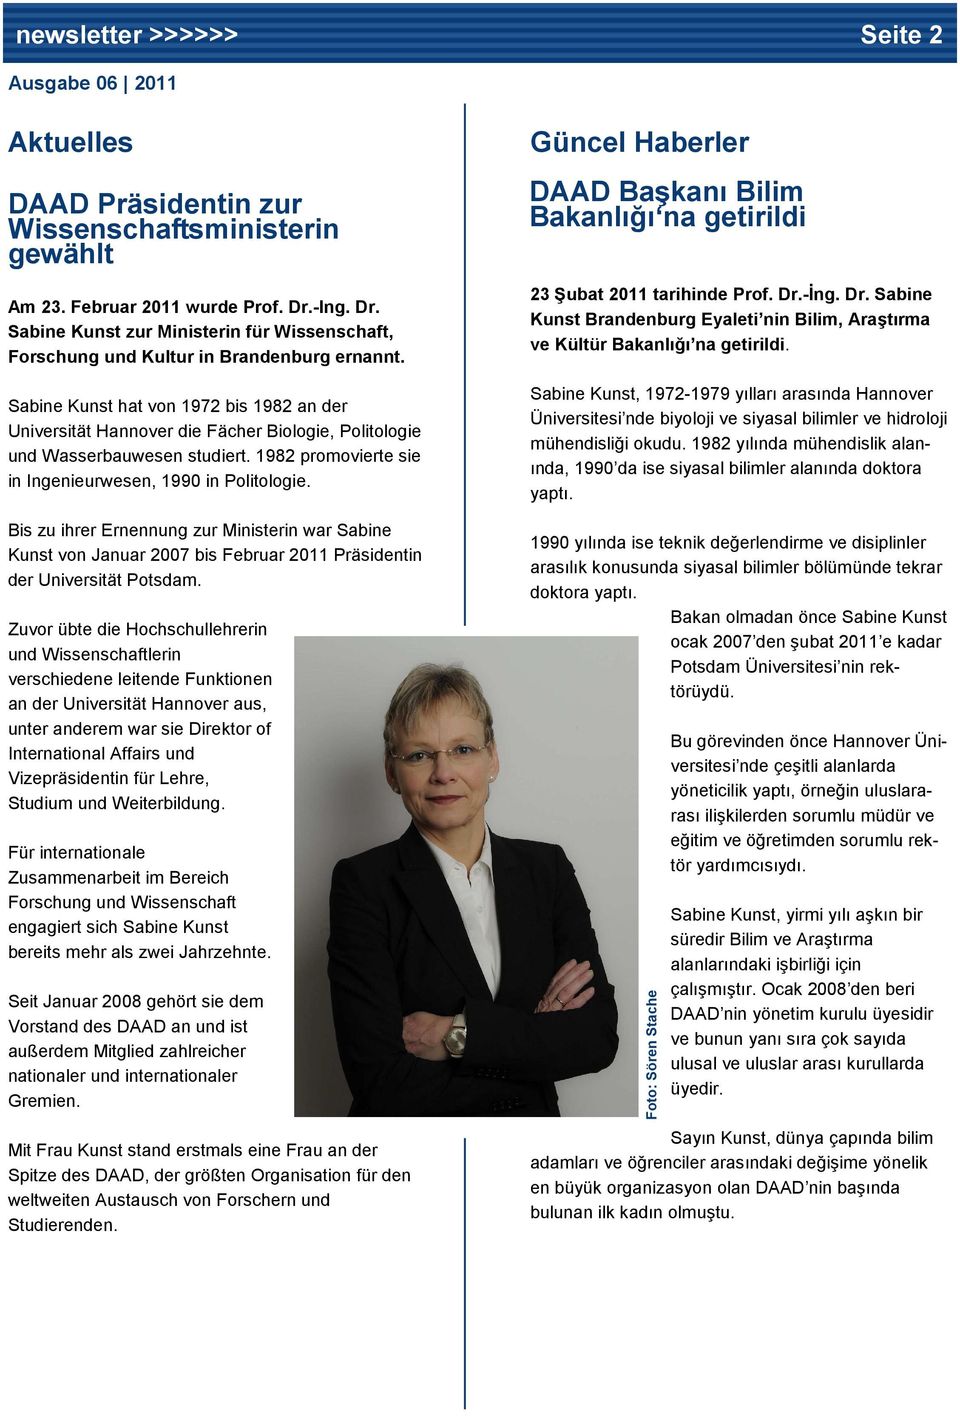 Bis zu ihrer Ernennung zur Ministerin war Sabine Kunst von Januar 2007 bis Februar 2011 Präsidentin der Universität Potsdam.